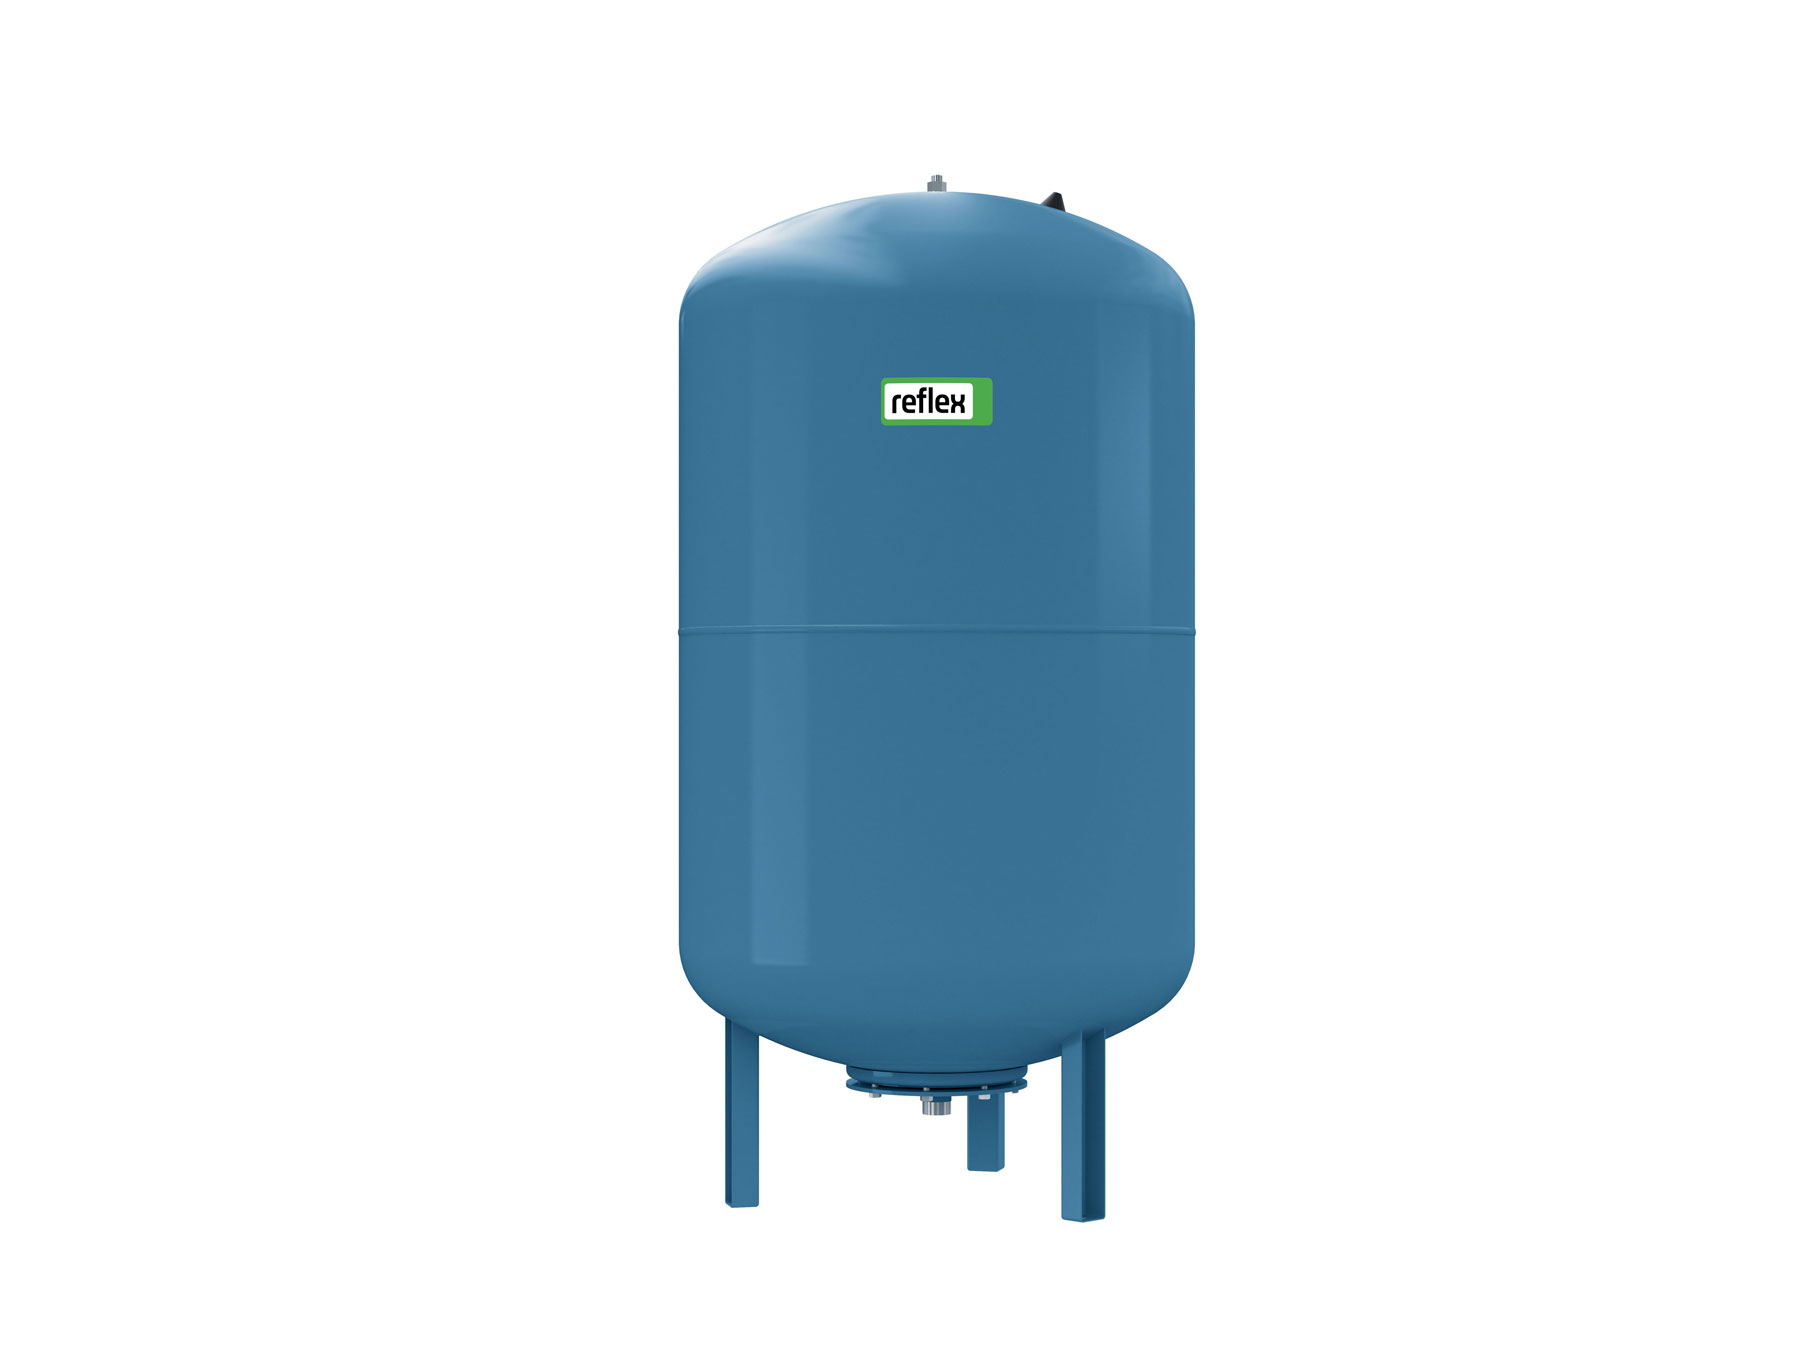 Obr. 4 Refix DE je neprůtočná expanzní nádoba určená pro požární a užitkovou vodu nebo pro otopné soustavy se zvýšeným korozním nebezpečím, například podlahové topení má označení Refix DE. Není vhodná pro pitnou vodu. Vyrábějí se ve velikostech 8 až 5 000 litrů pro tlak 10 a 16 barů.